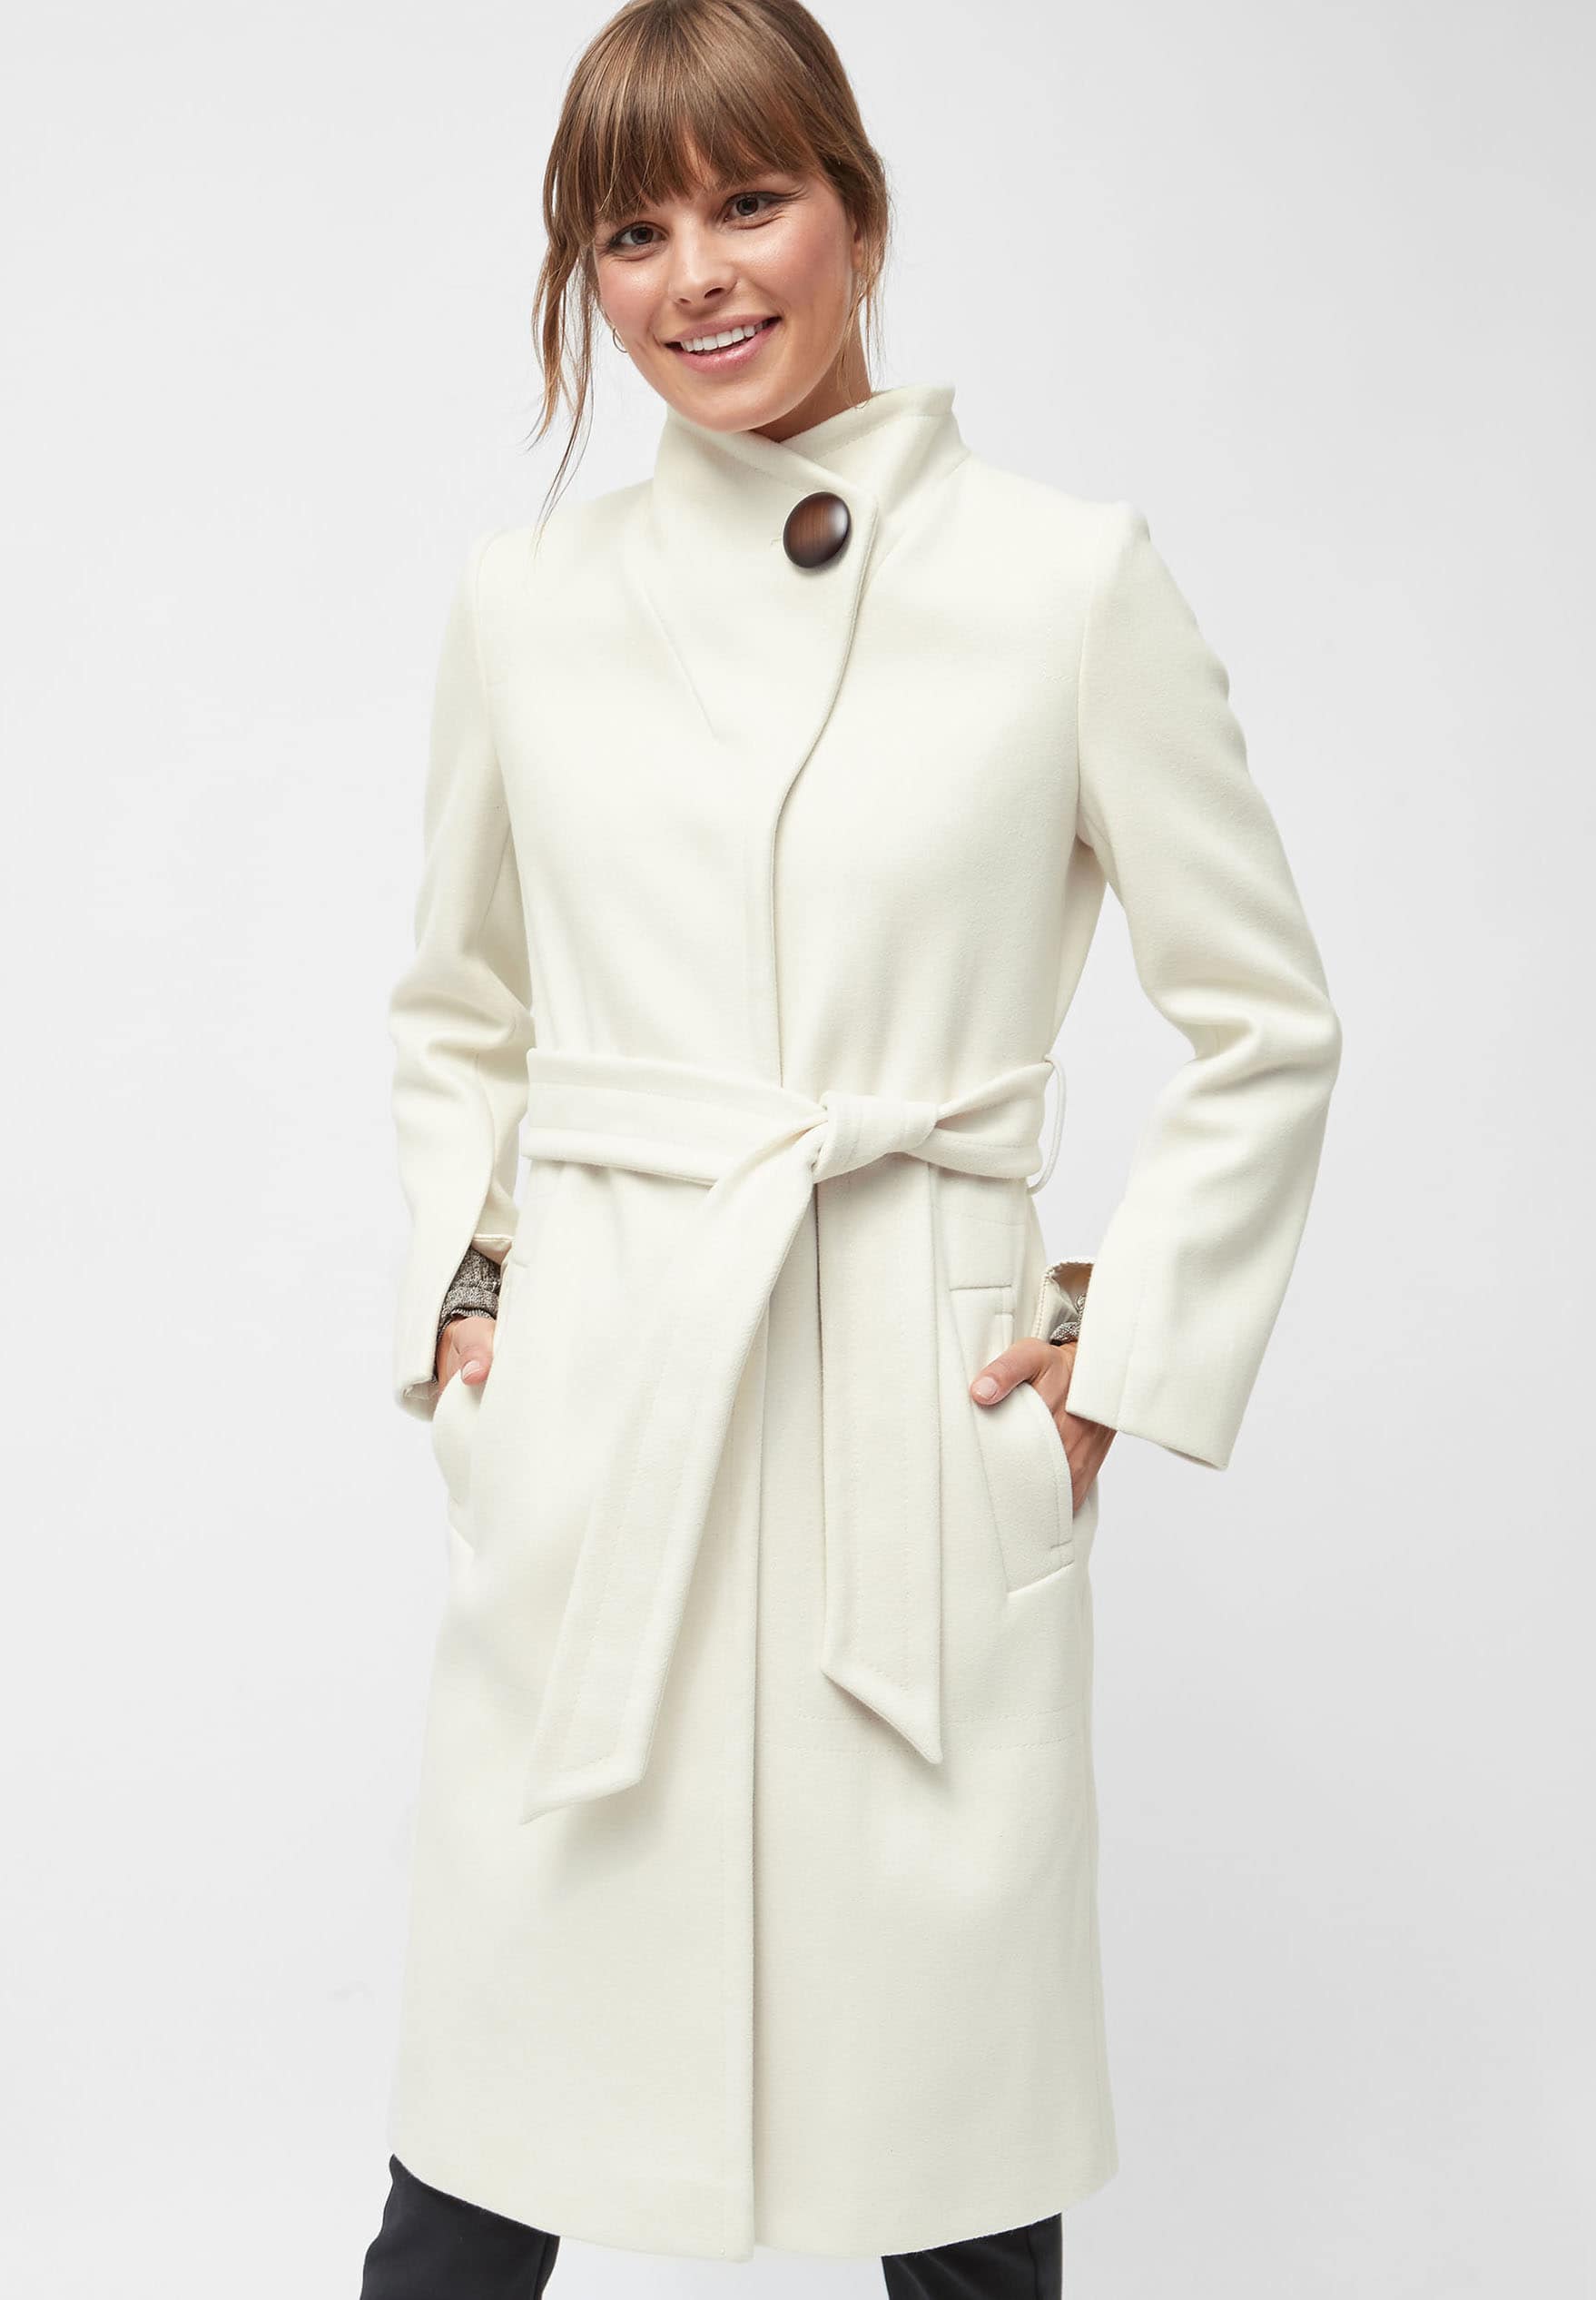 5 abrigos blancos low cost para copiar el look de Melania Trump